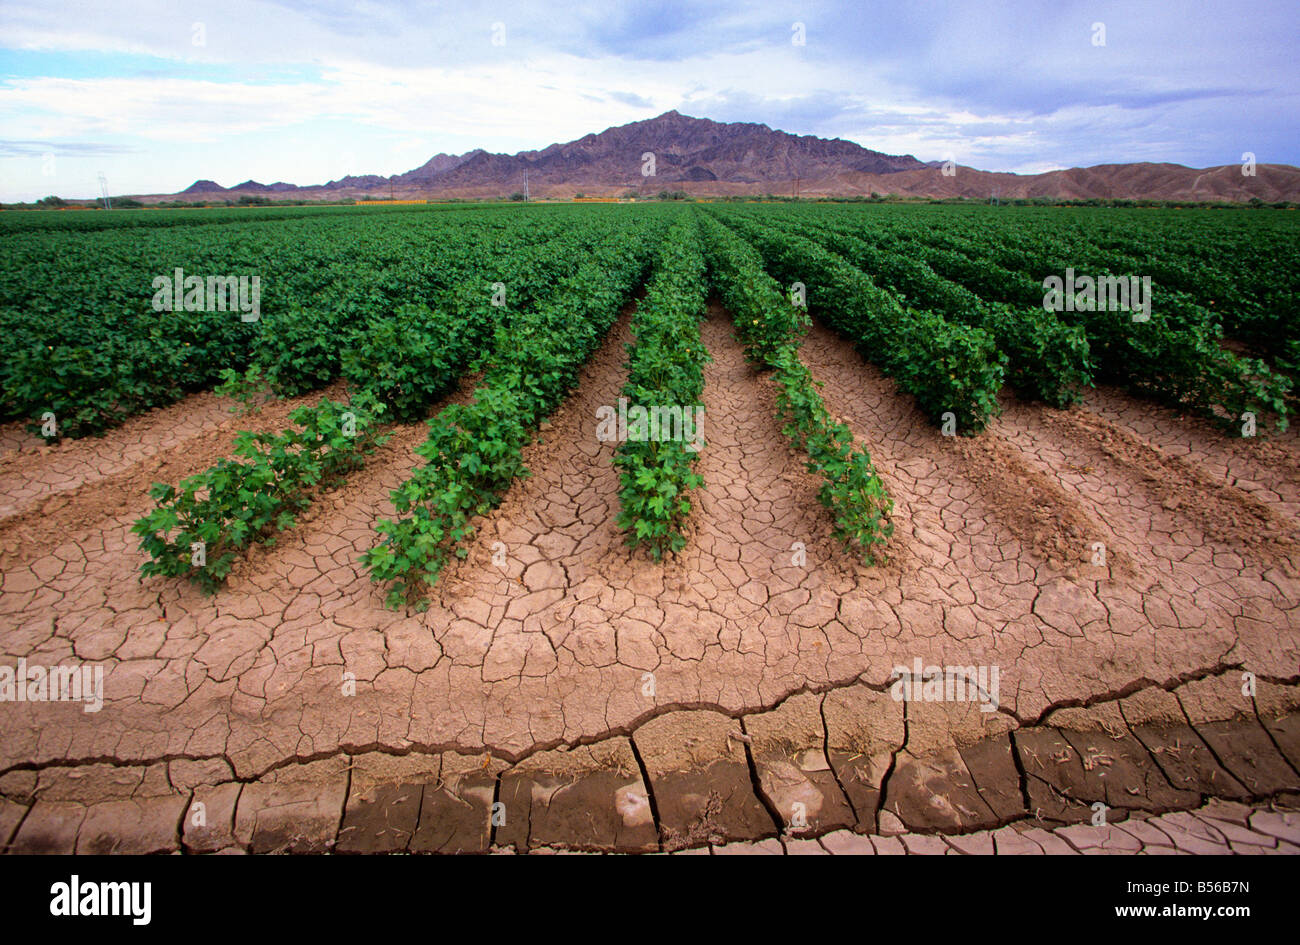 La masse sèche et les fissures entre les flux d'eau d'irrigation sur une exploitation agricole irriguée en légumes de plus en plus désert californien, USA Banque D'Images